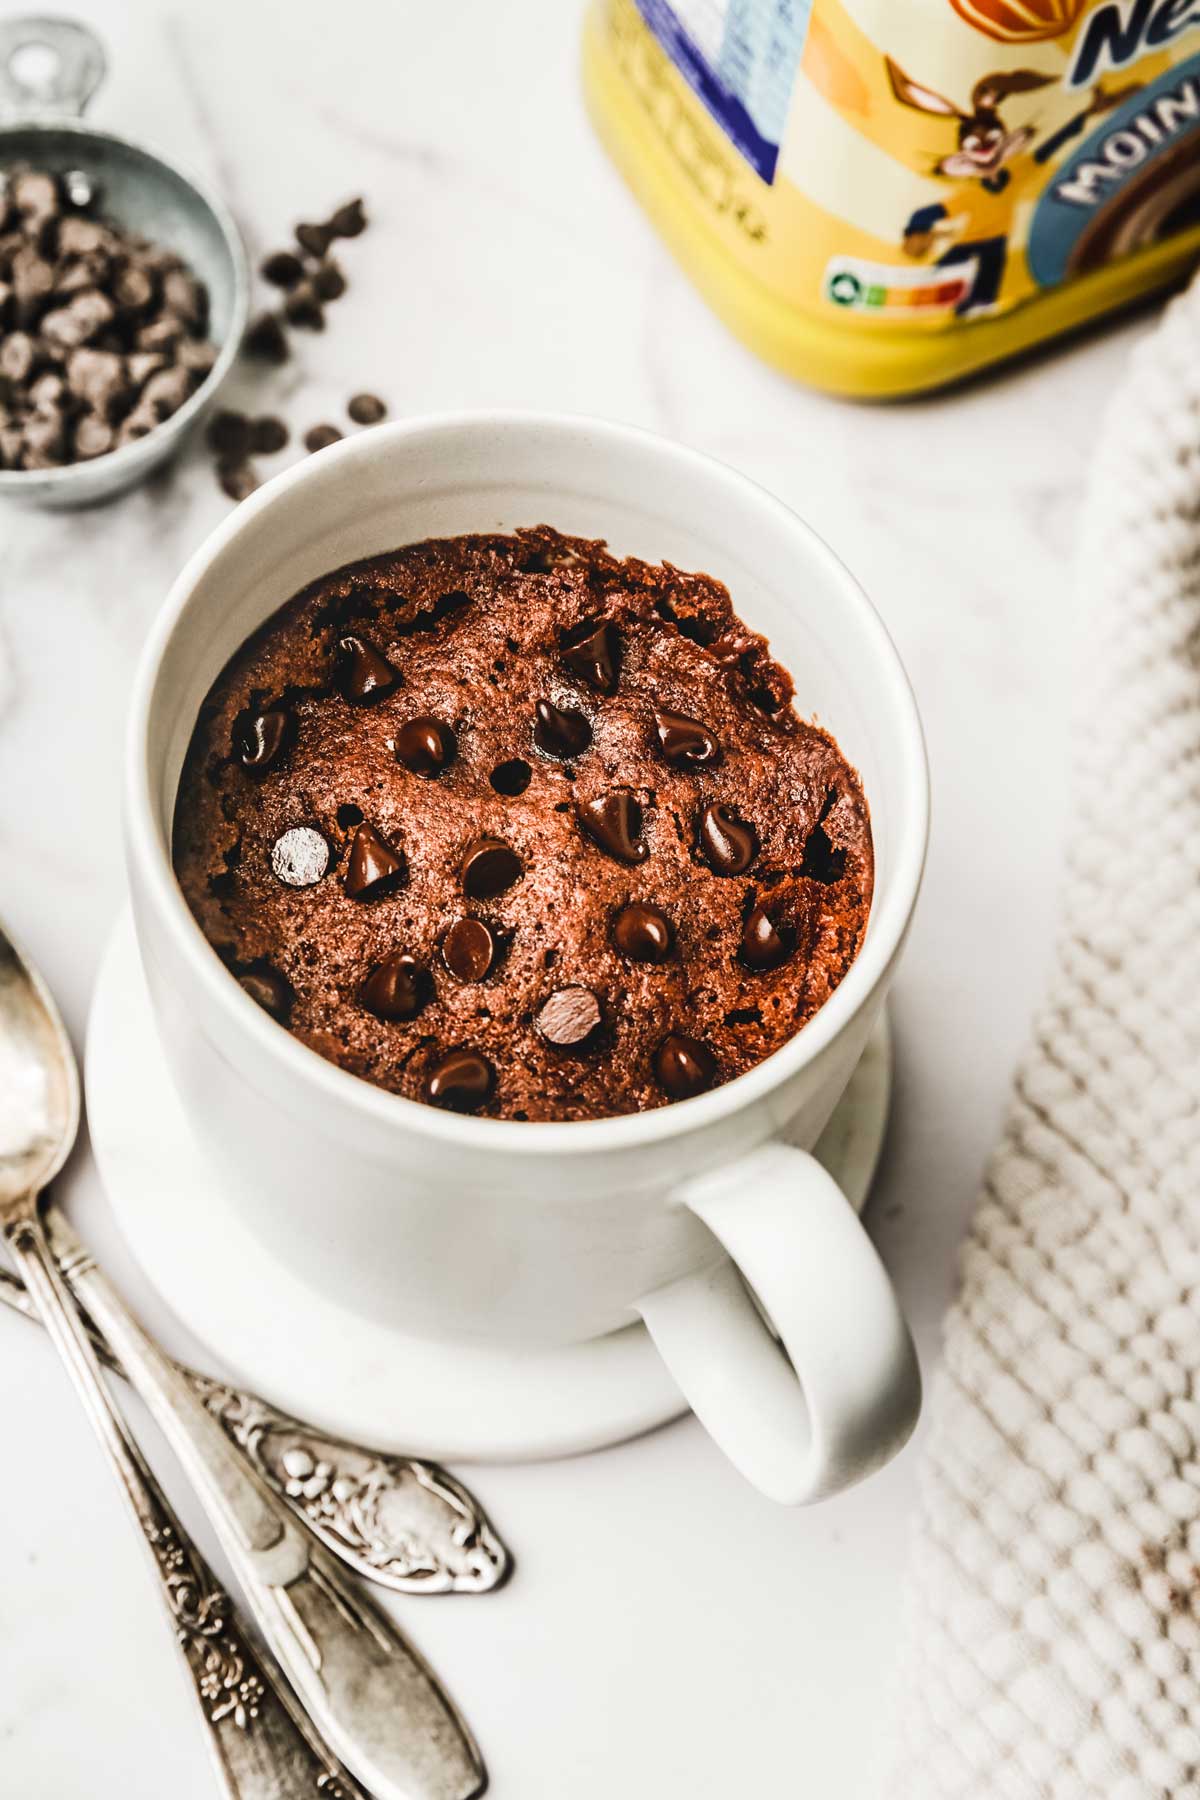 Best S'mores Mug Cake Recipe - How to Make S'mores Mug Cakes